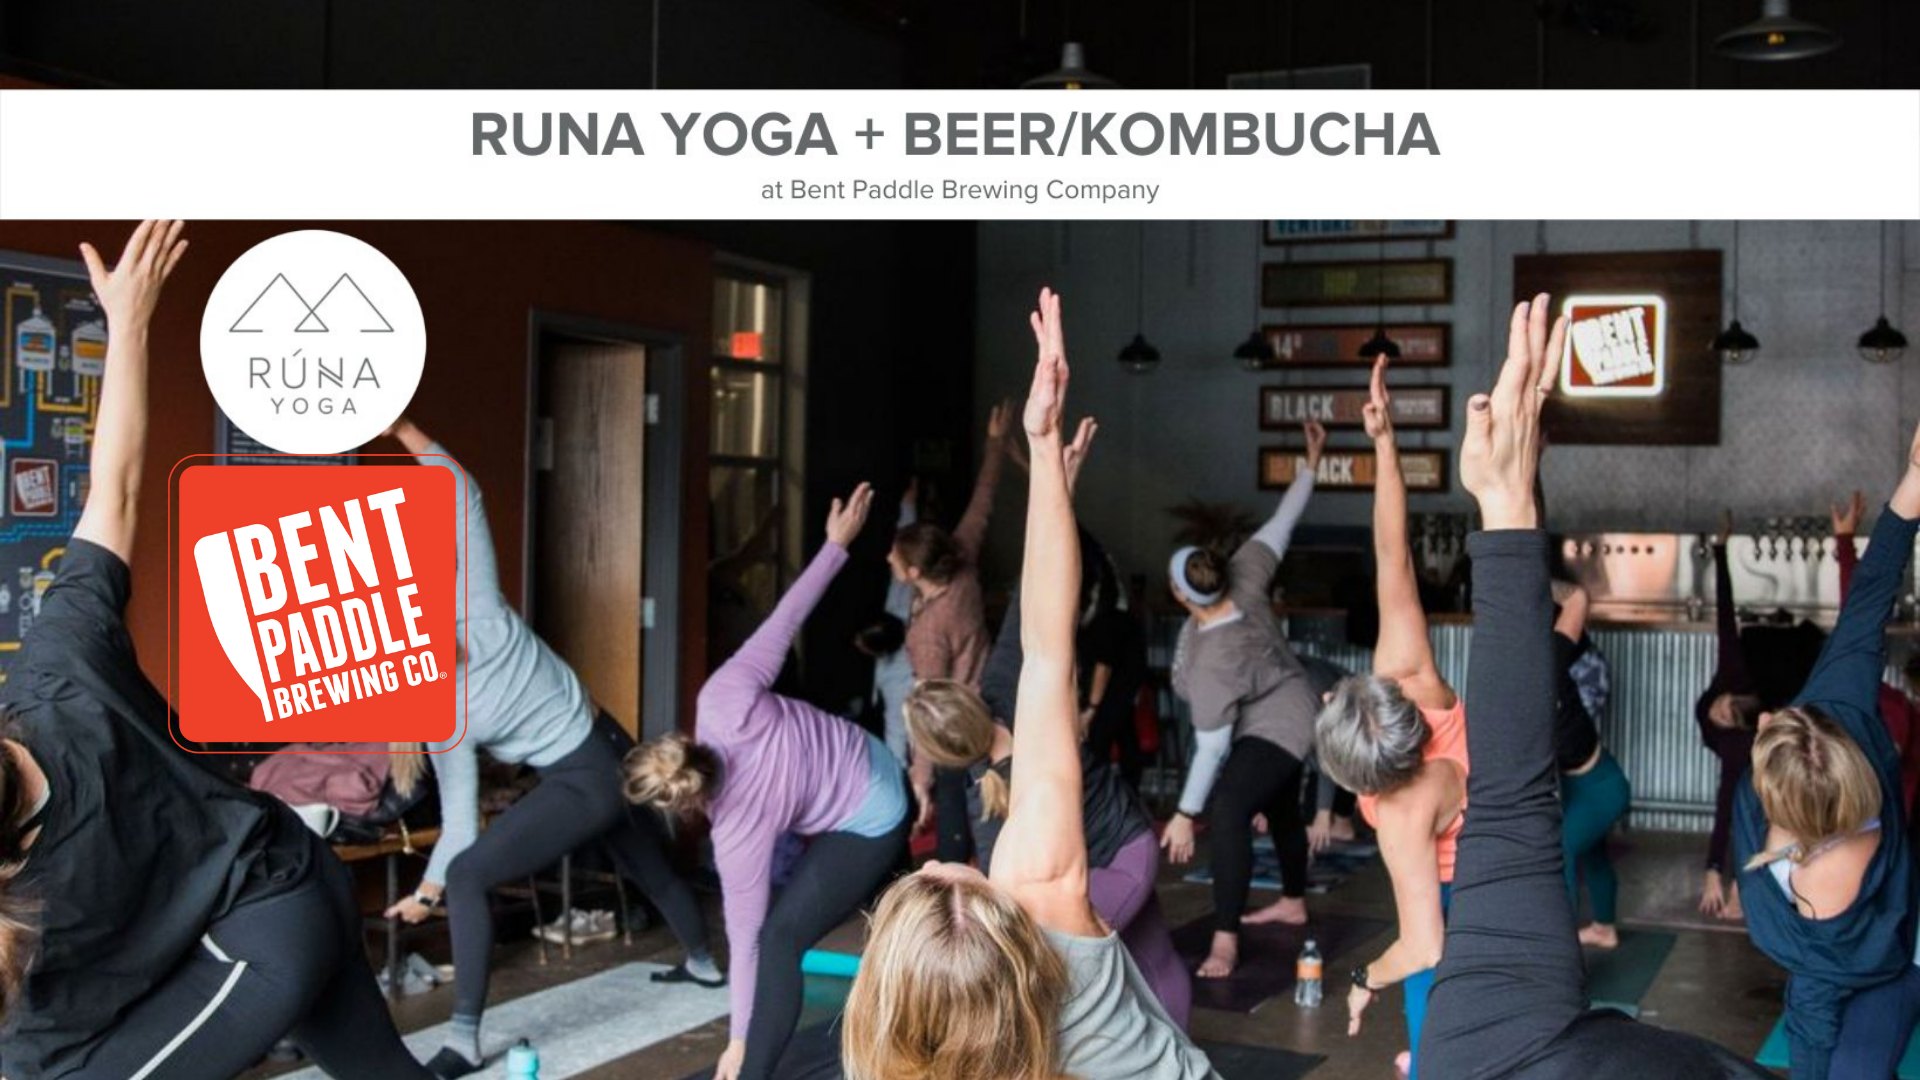 Runa Yoga + Beer/Kombucha at Bent Paddle